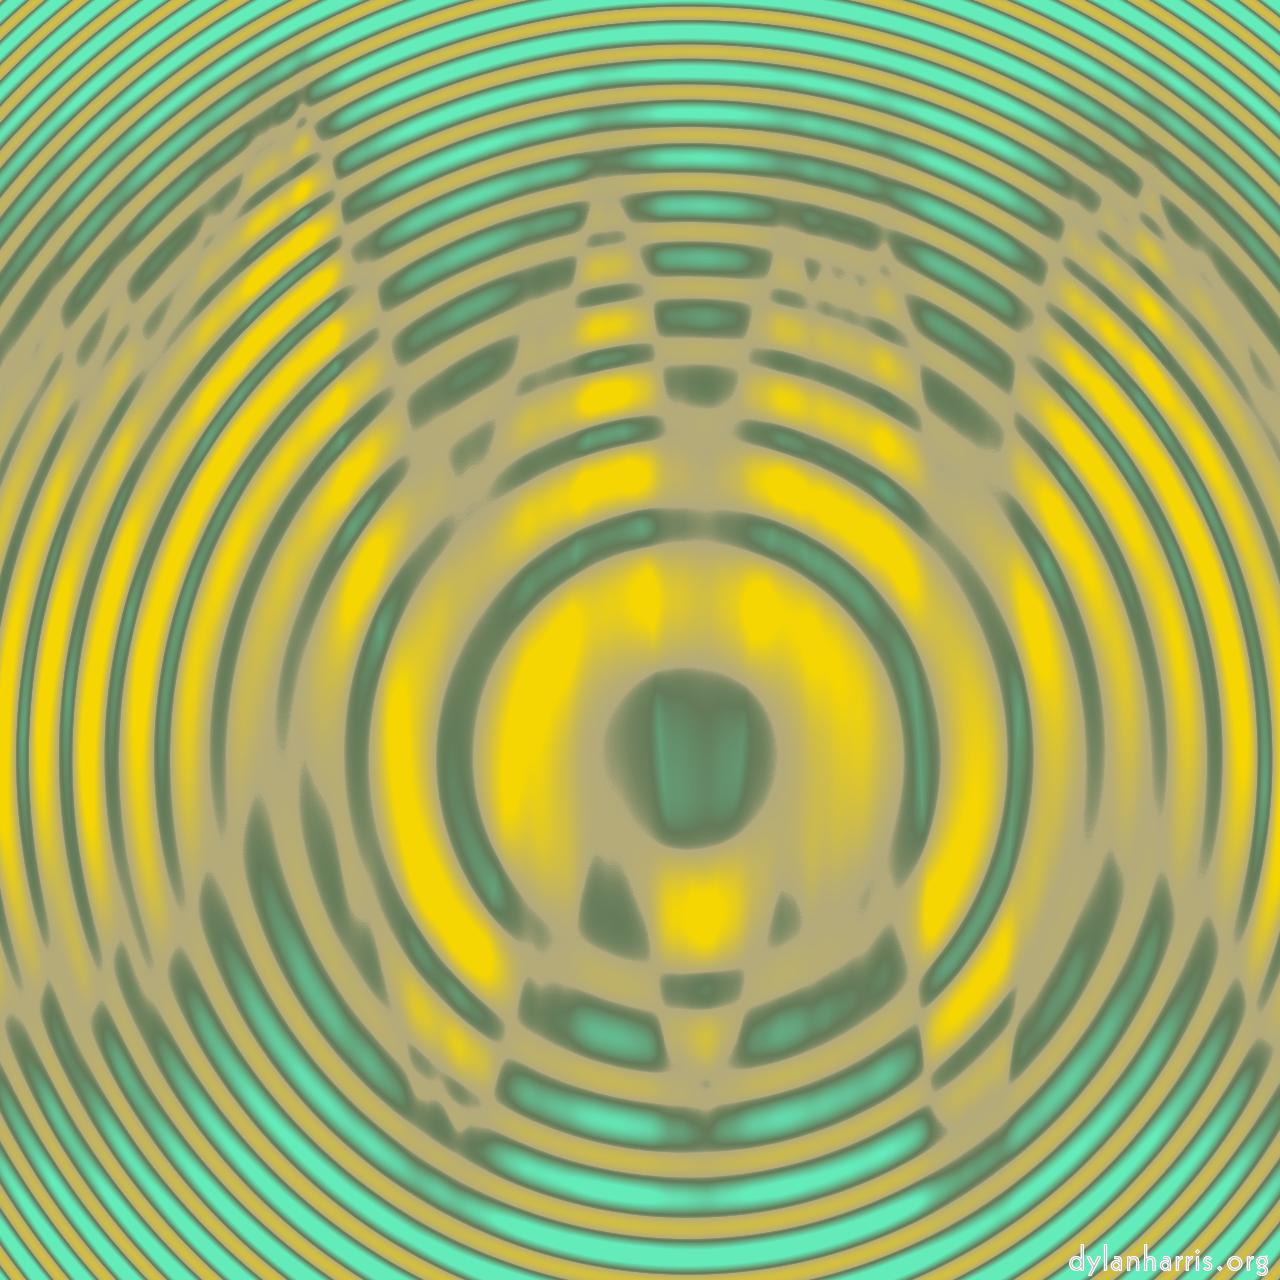 image: abstract circular :: interference